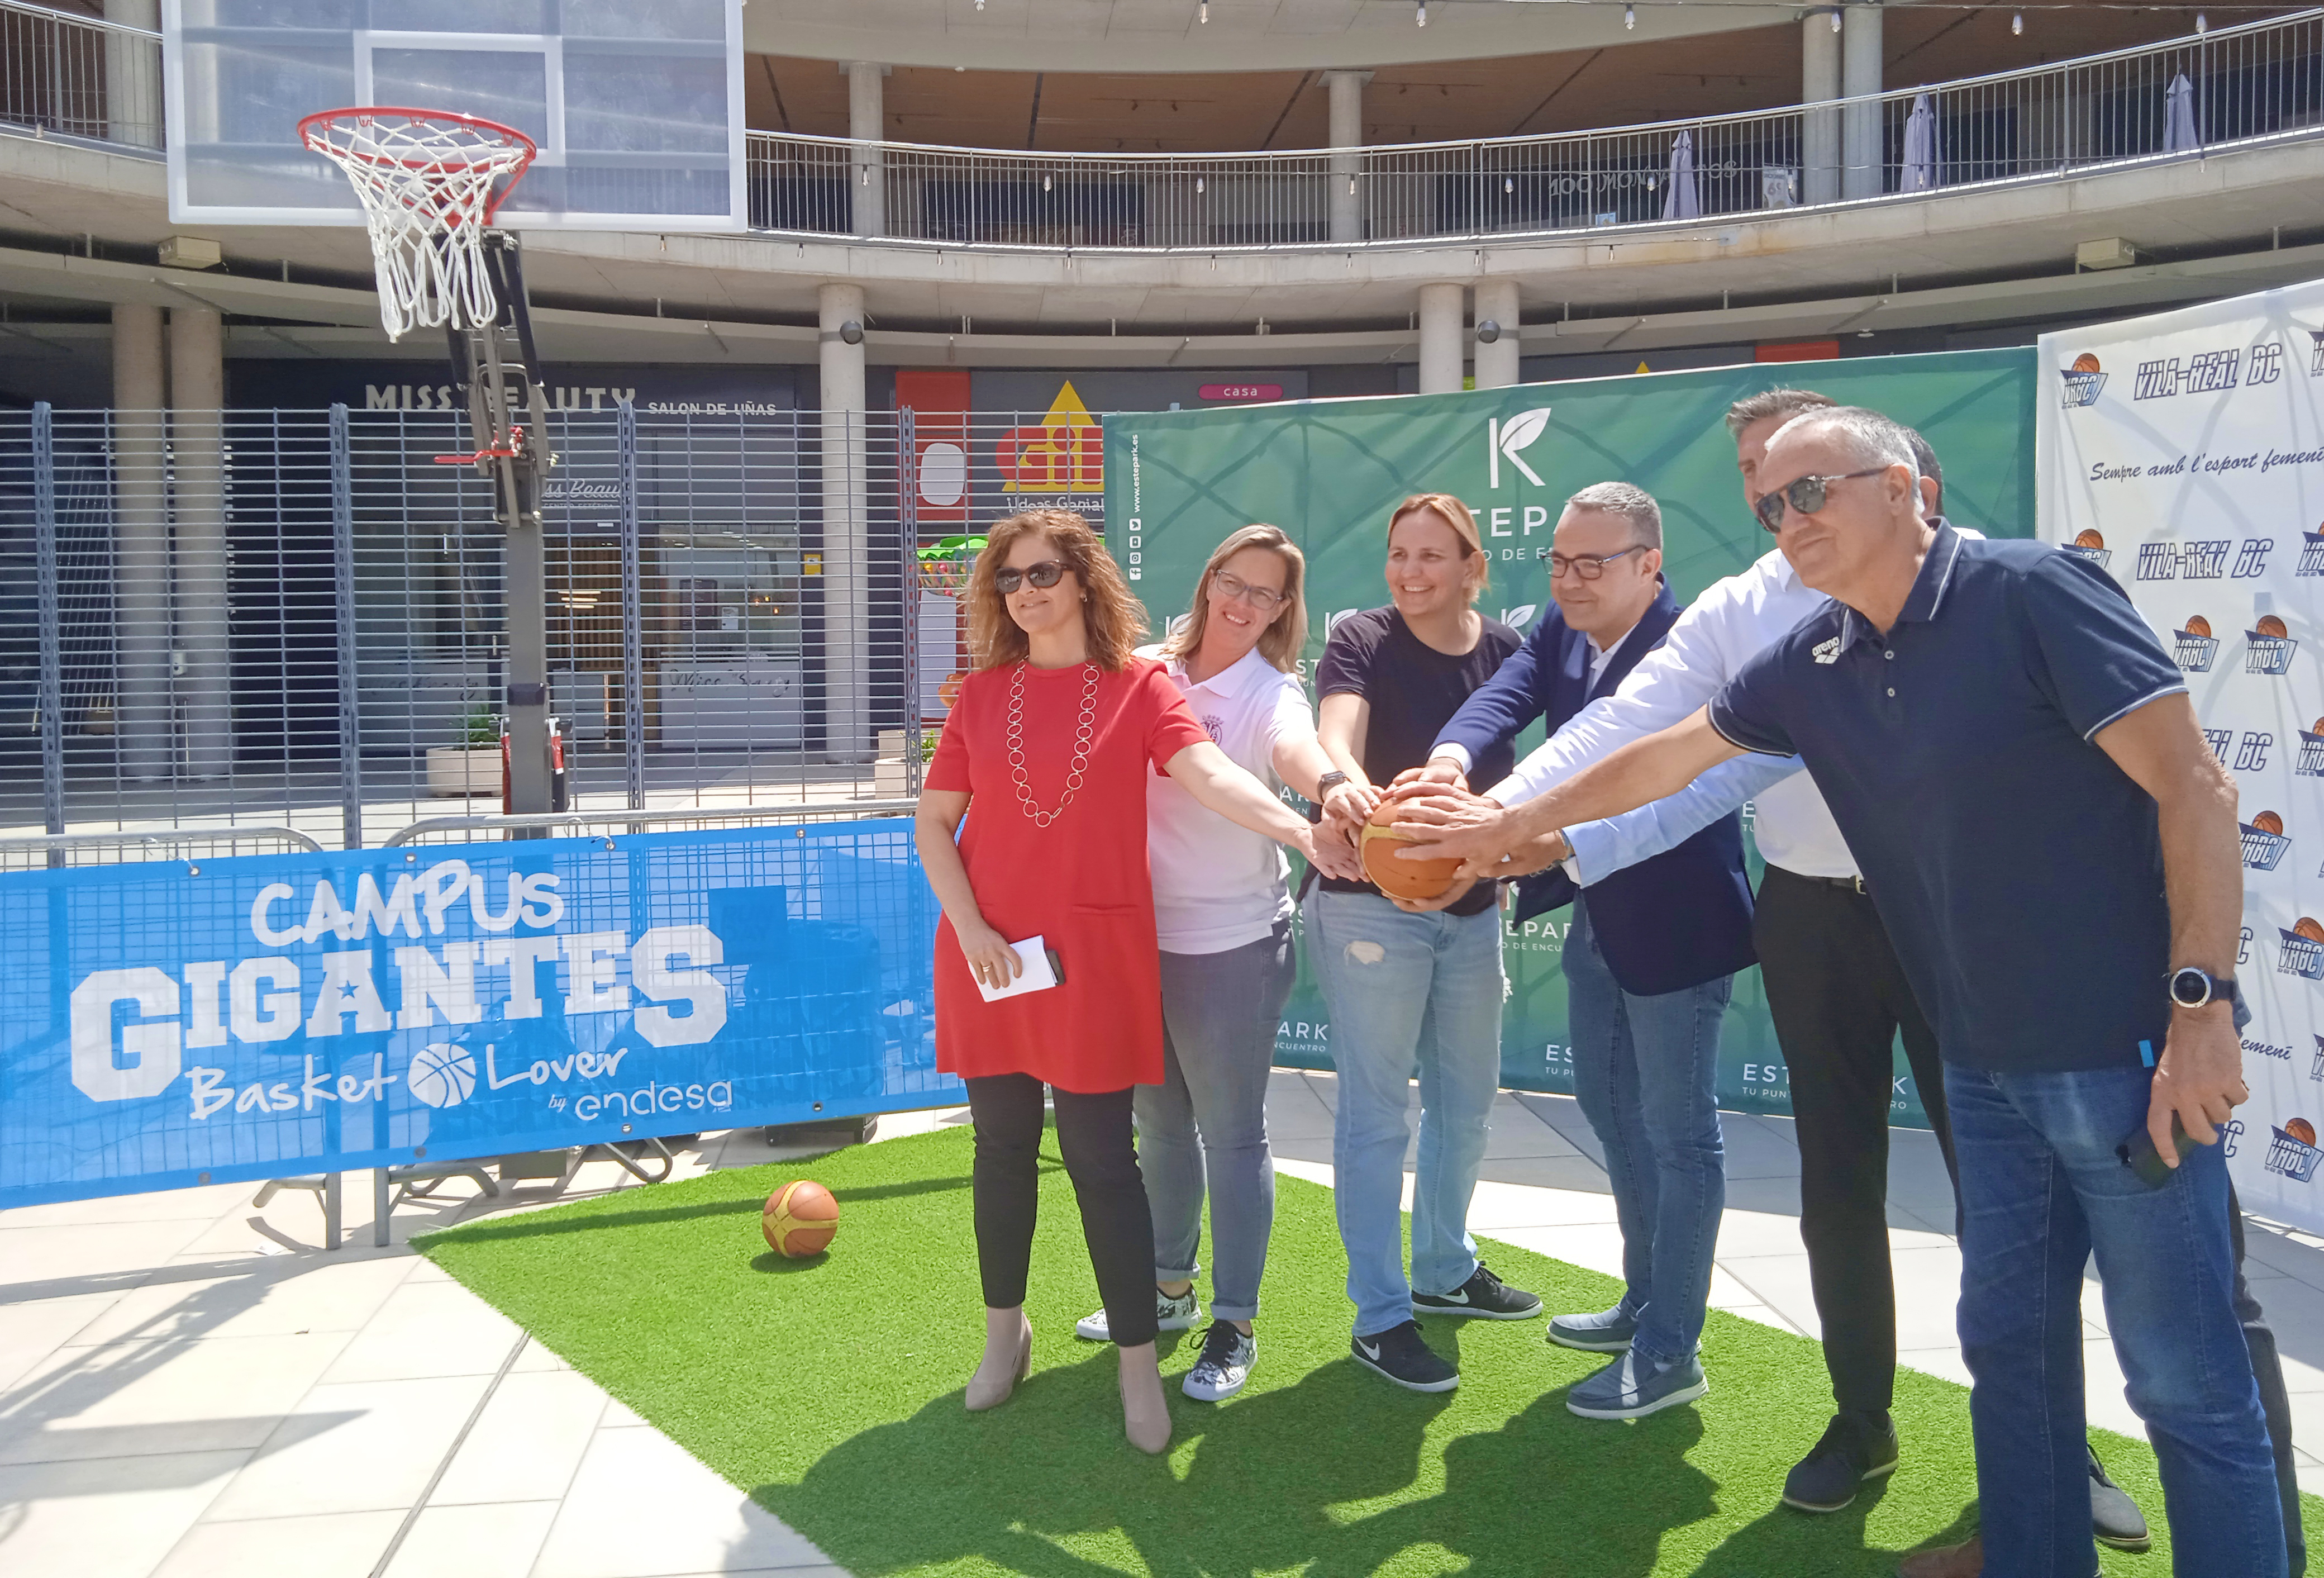 Estepark acoge la presentación del Campus Gigantes Basket Lover que vuelve a Vila-real en su 2ª edición.